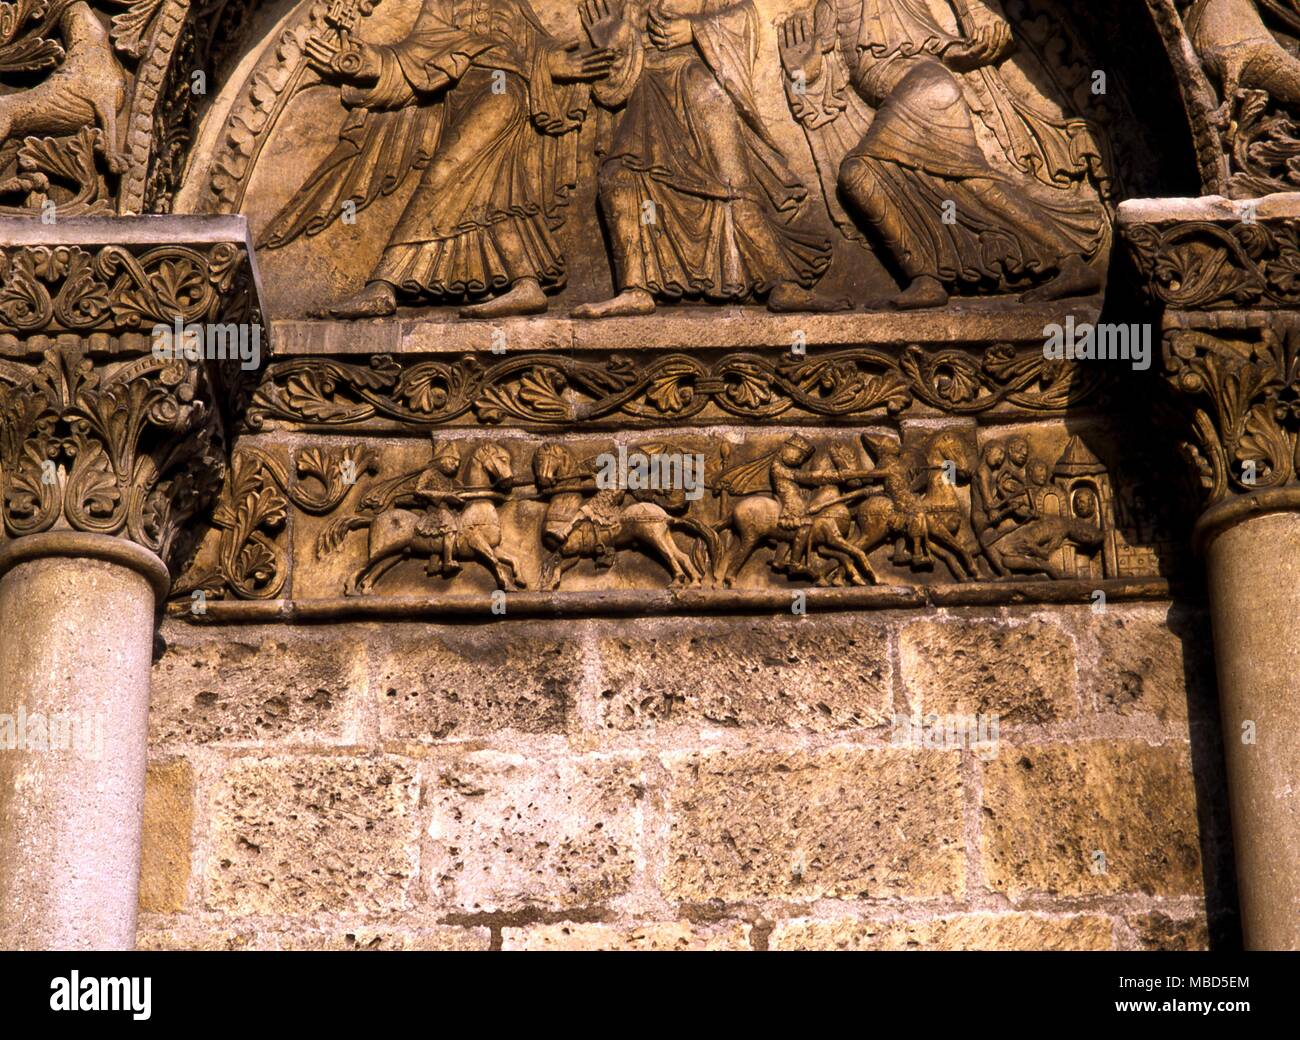 Templari - Angouleme, Francia. Fregio di combattimenti di cavalieri, detto da alcuni cavalieri Templari. Altri dicono che sono le figure di una leggenda del Roland a Ronceveaux, tenendo Saragossa dai Saraceni. Foto Stock